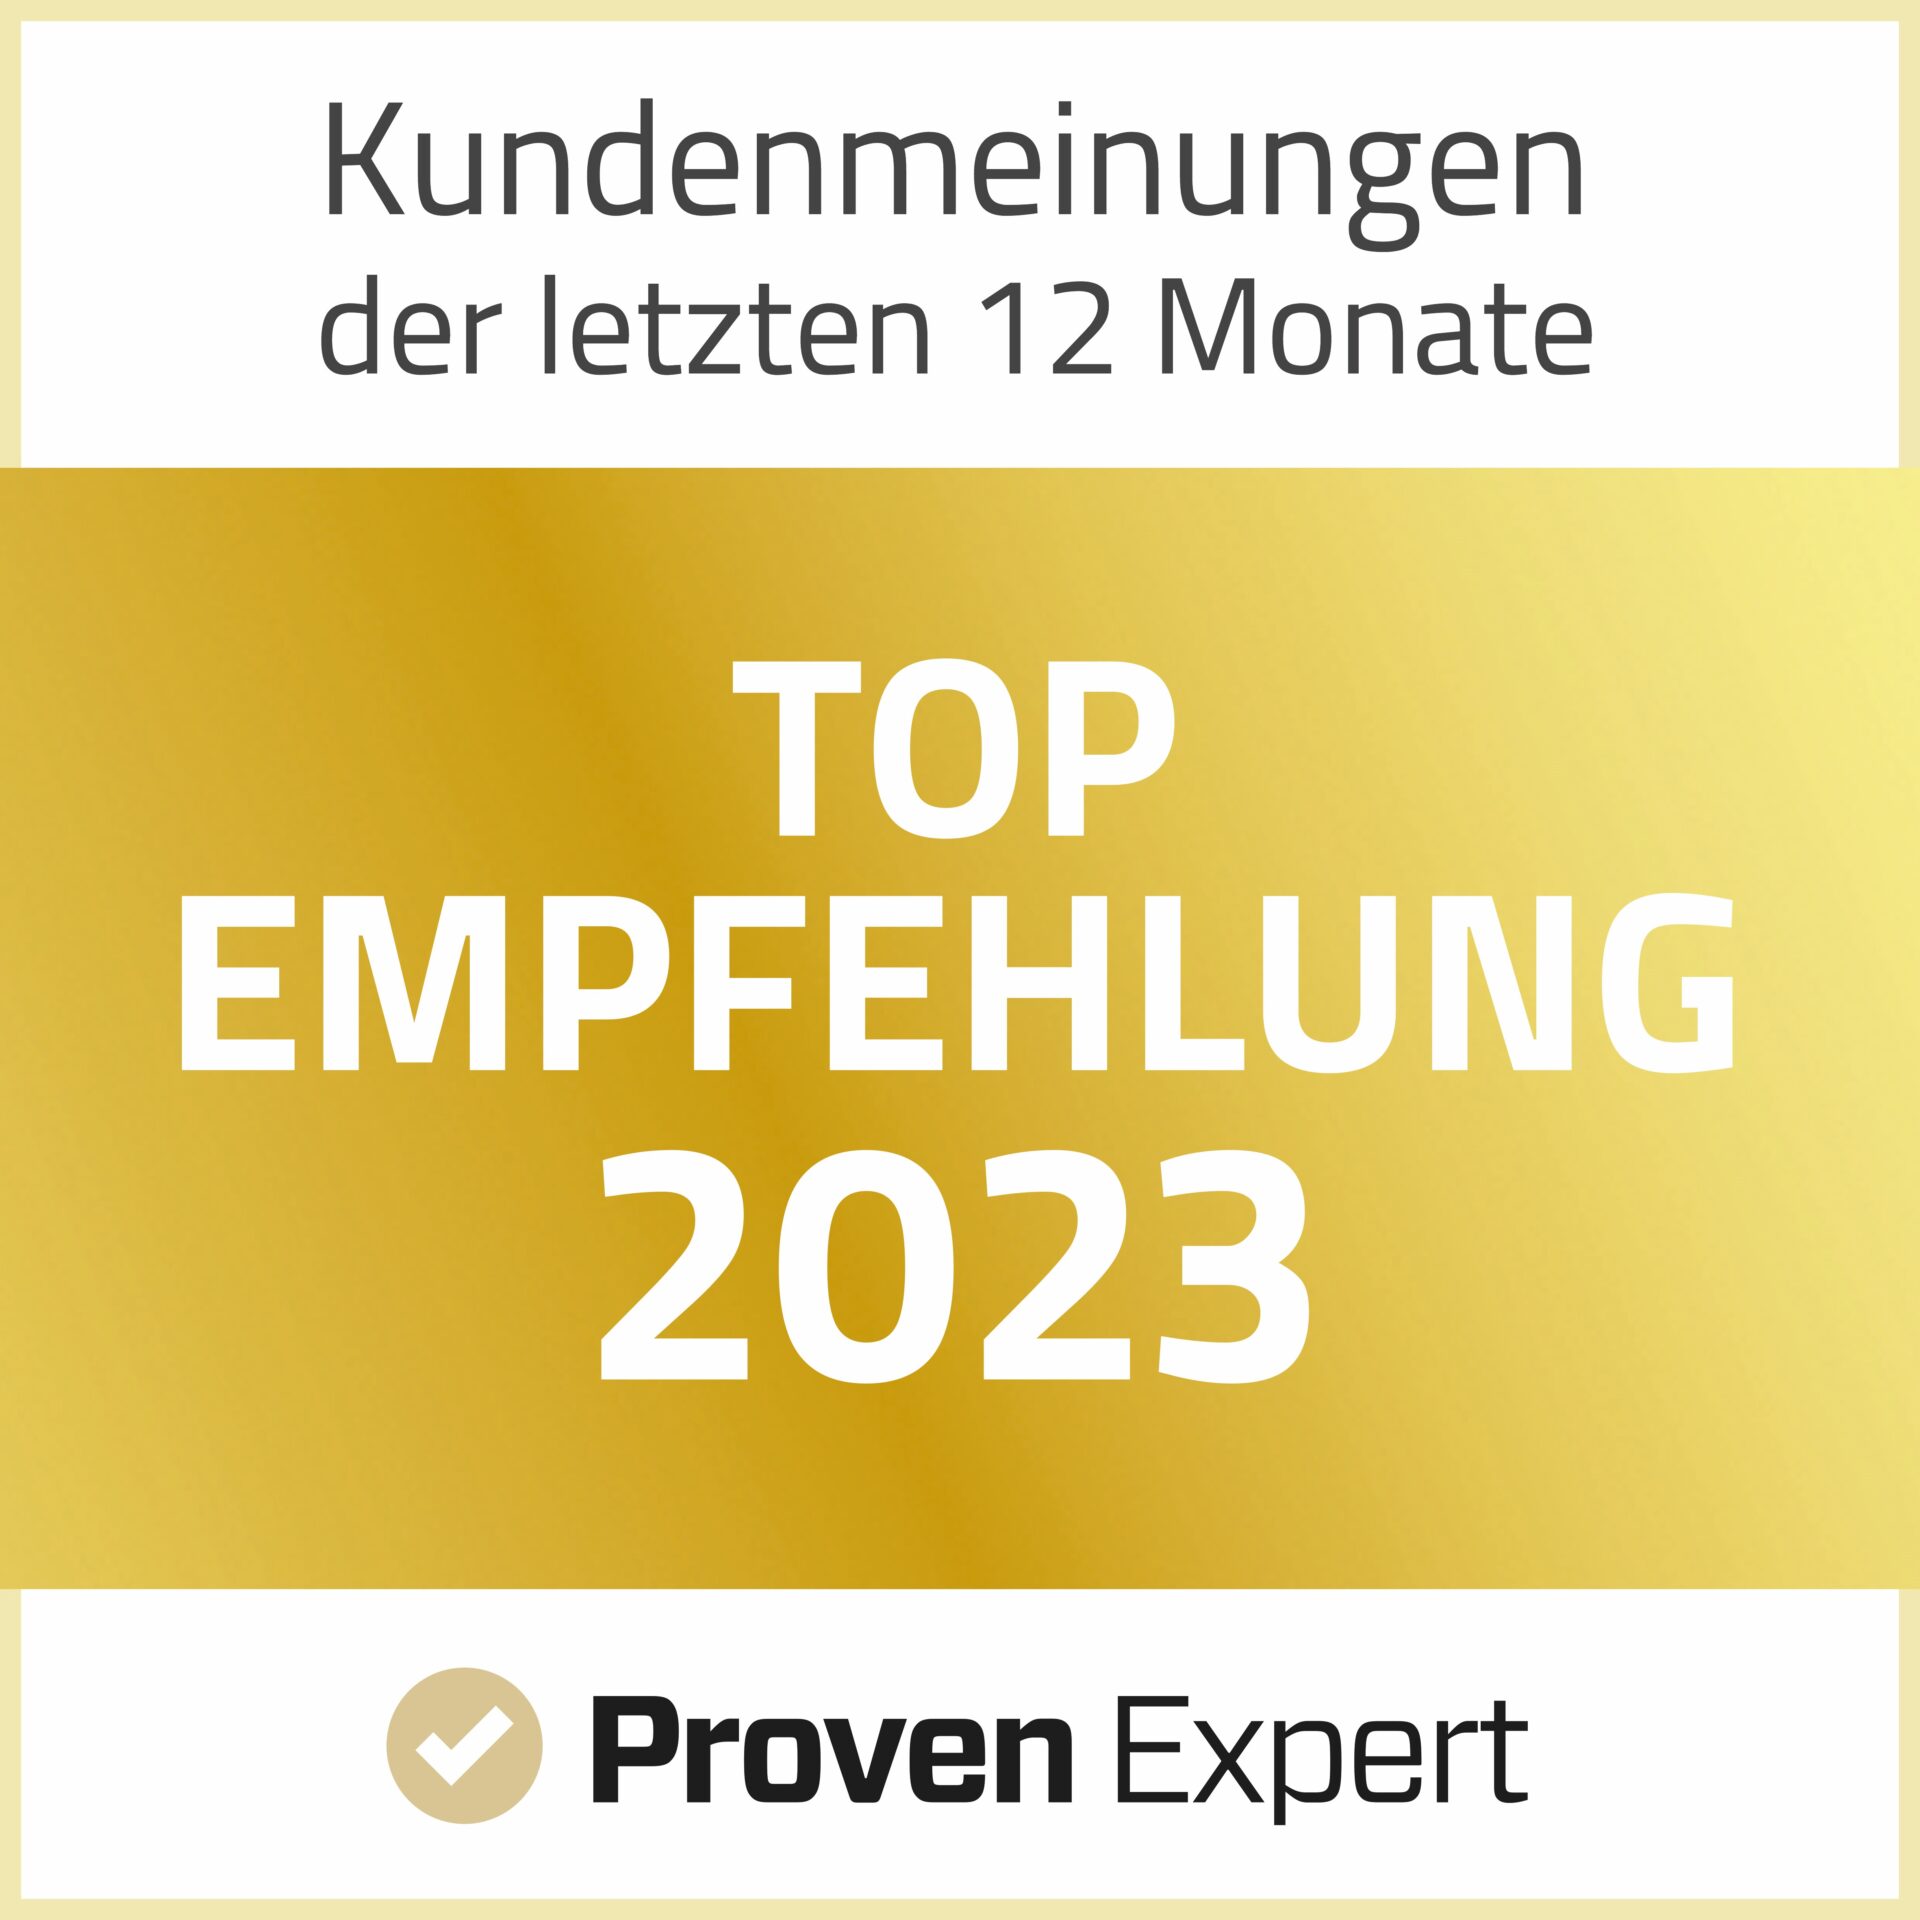 Top Empfehlung Medizinrecht Frankfurt 2023